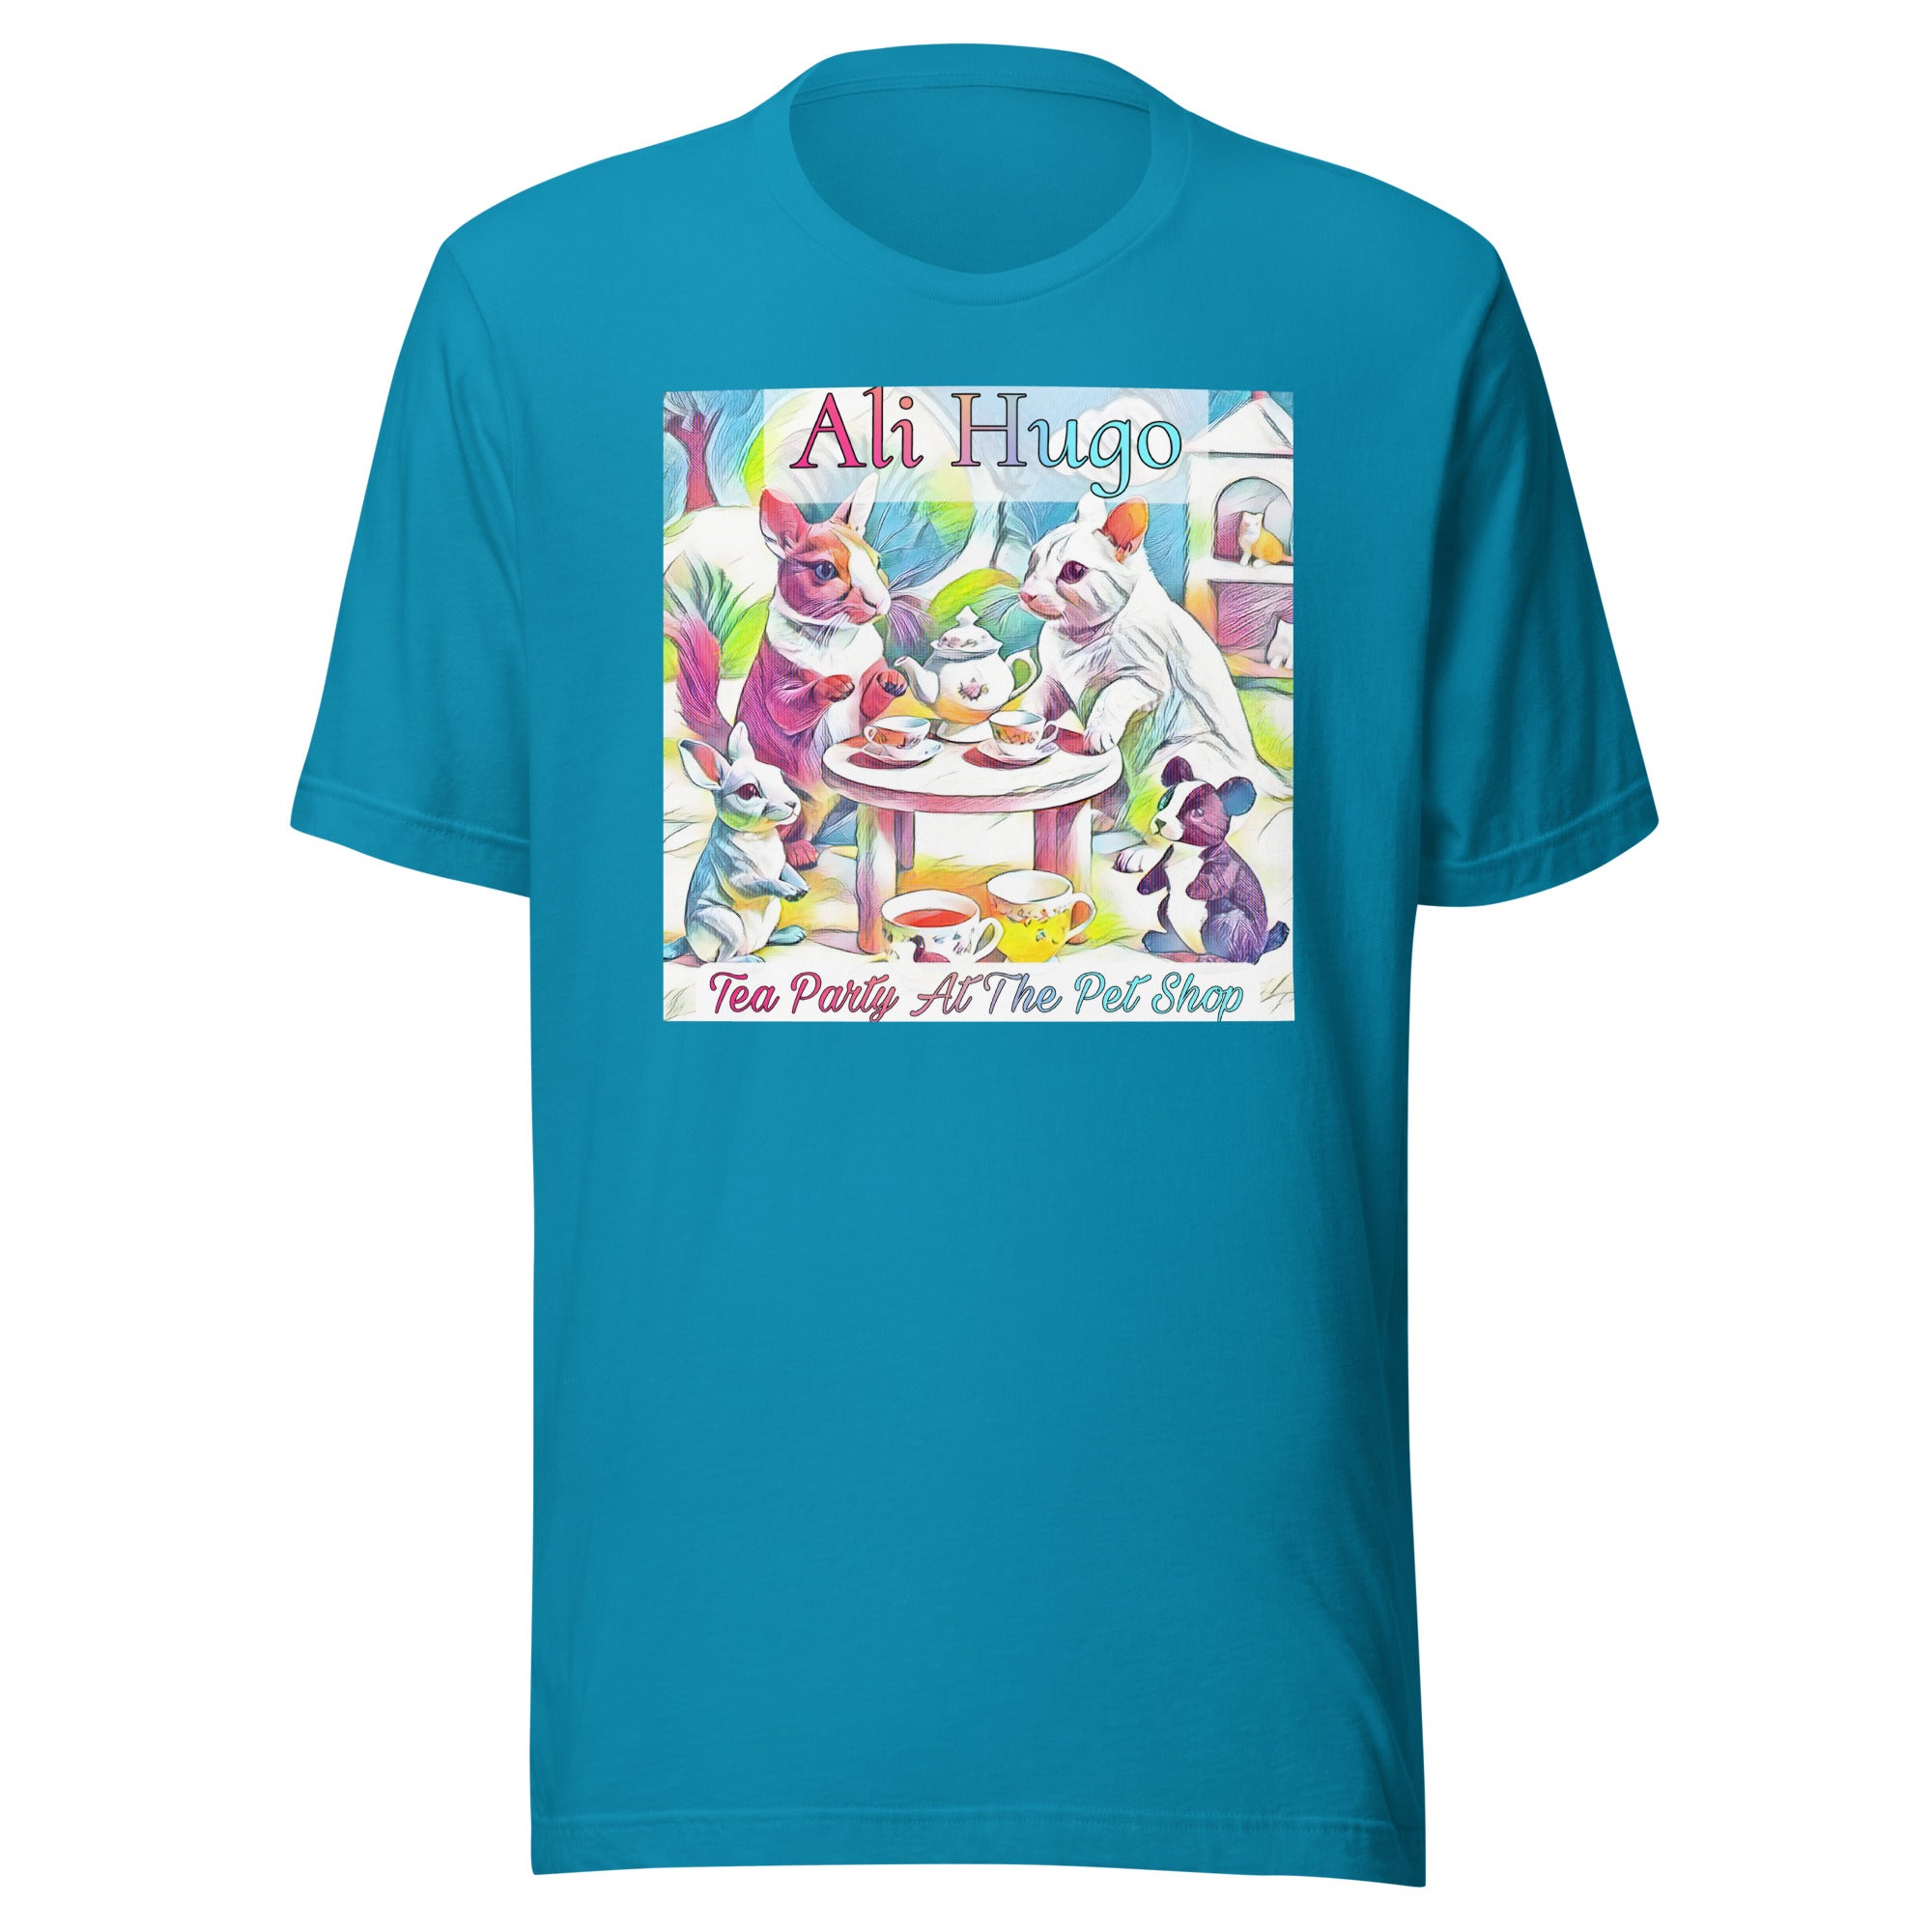 Ali Hugo - "Tea Party At The Pet Shop" - t-shirt